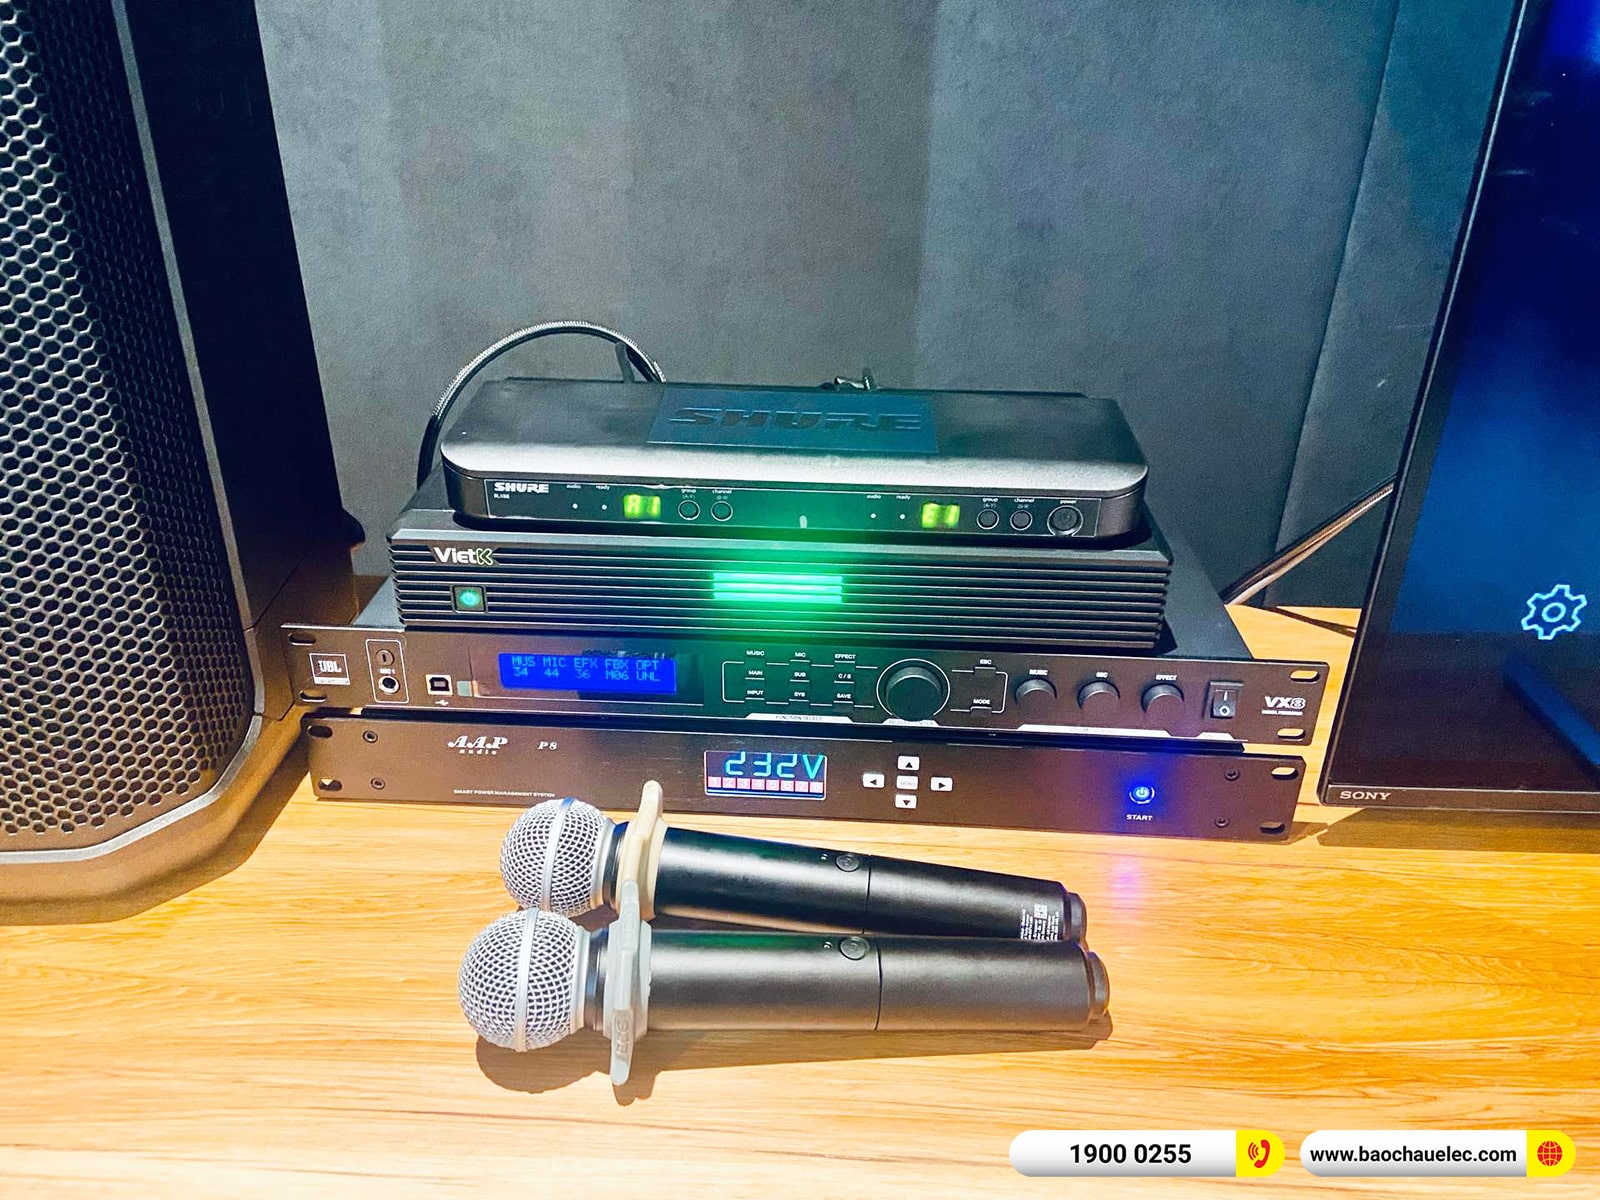 Lắp đặt dàn karaoke JBL hơn 152tr cho anh Tuấn tại Quảng Ninh (JBL PRX912, VX8, JBL PRX915XLF, BLX288A/SM58,…)